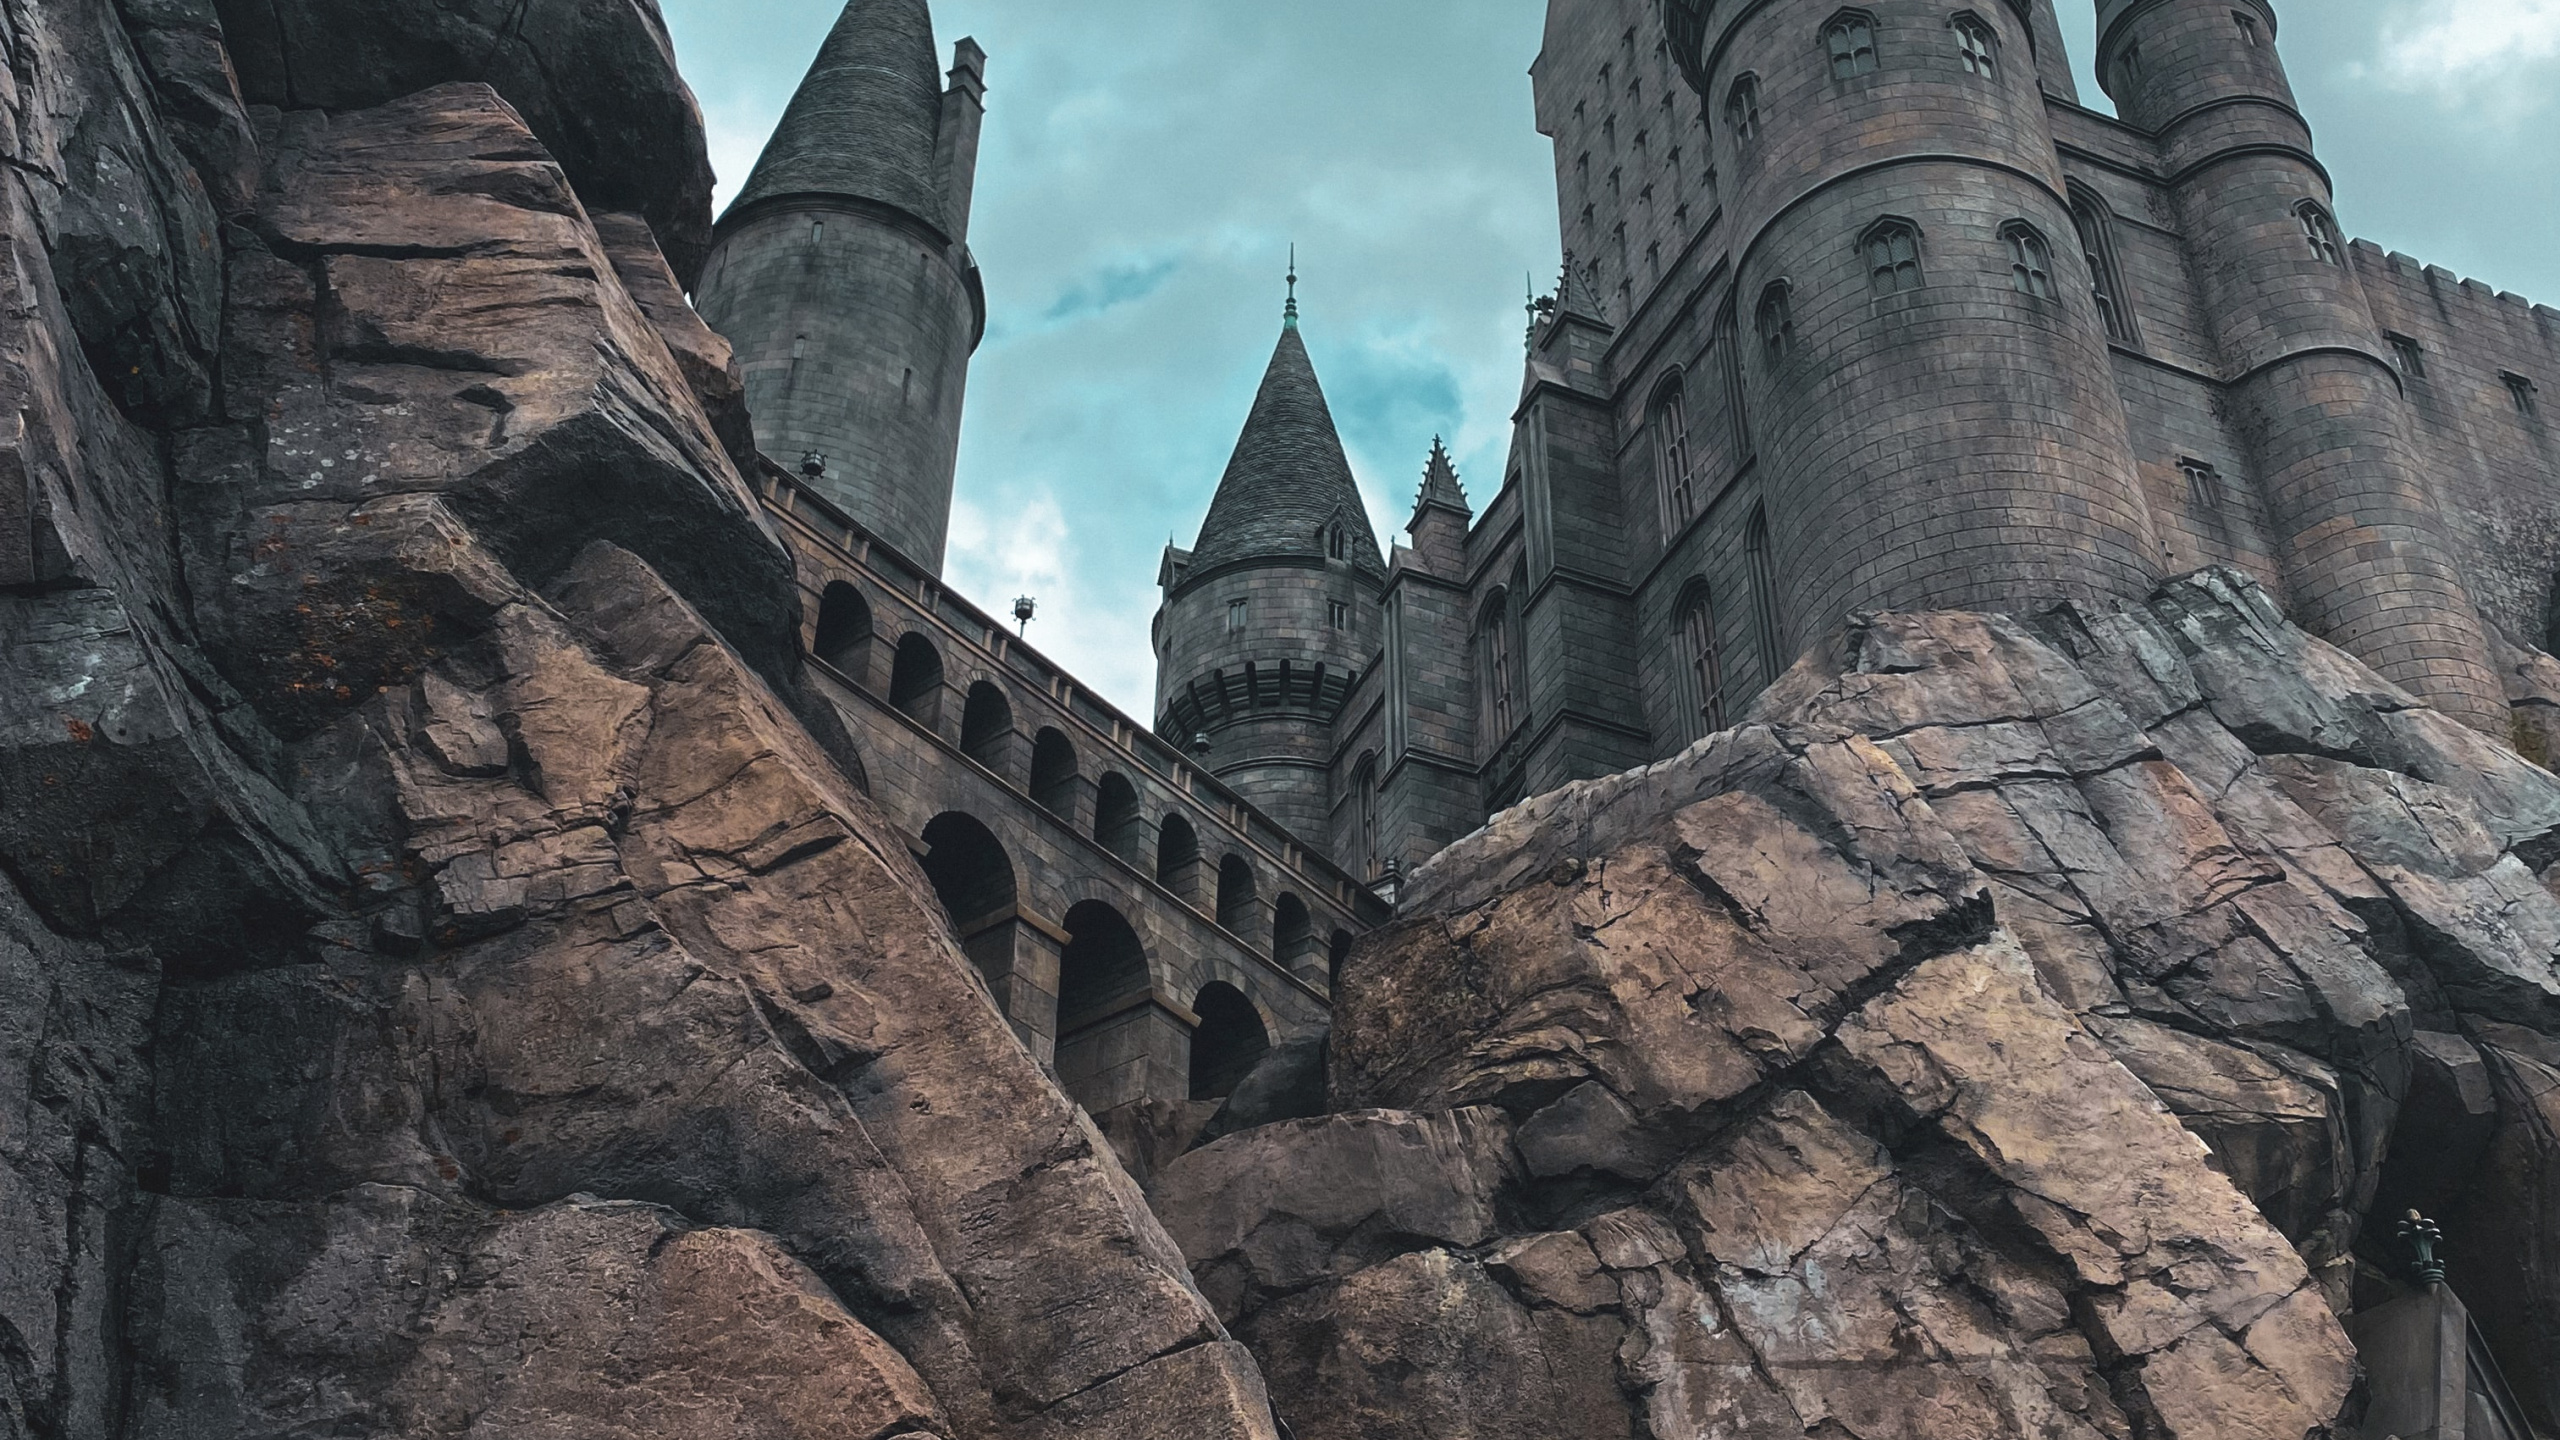 Hogwarts, 哈利*波特, 魔法世界, 斯莱特林的房子, 里程碑 壁纸 2560x1440 允许